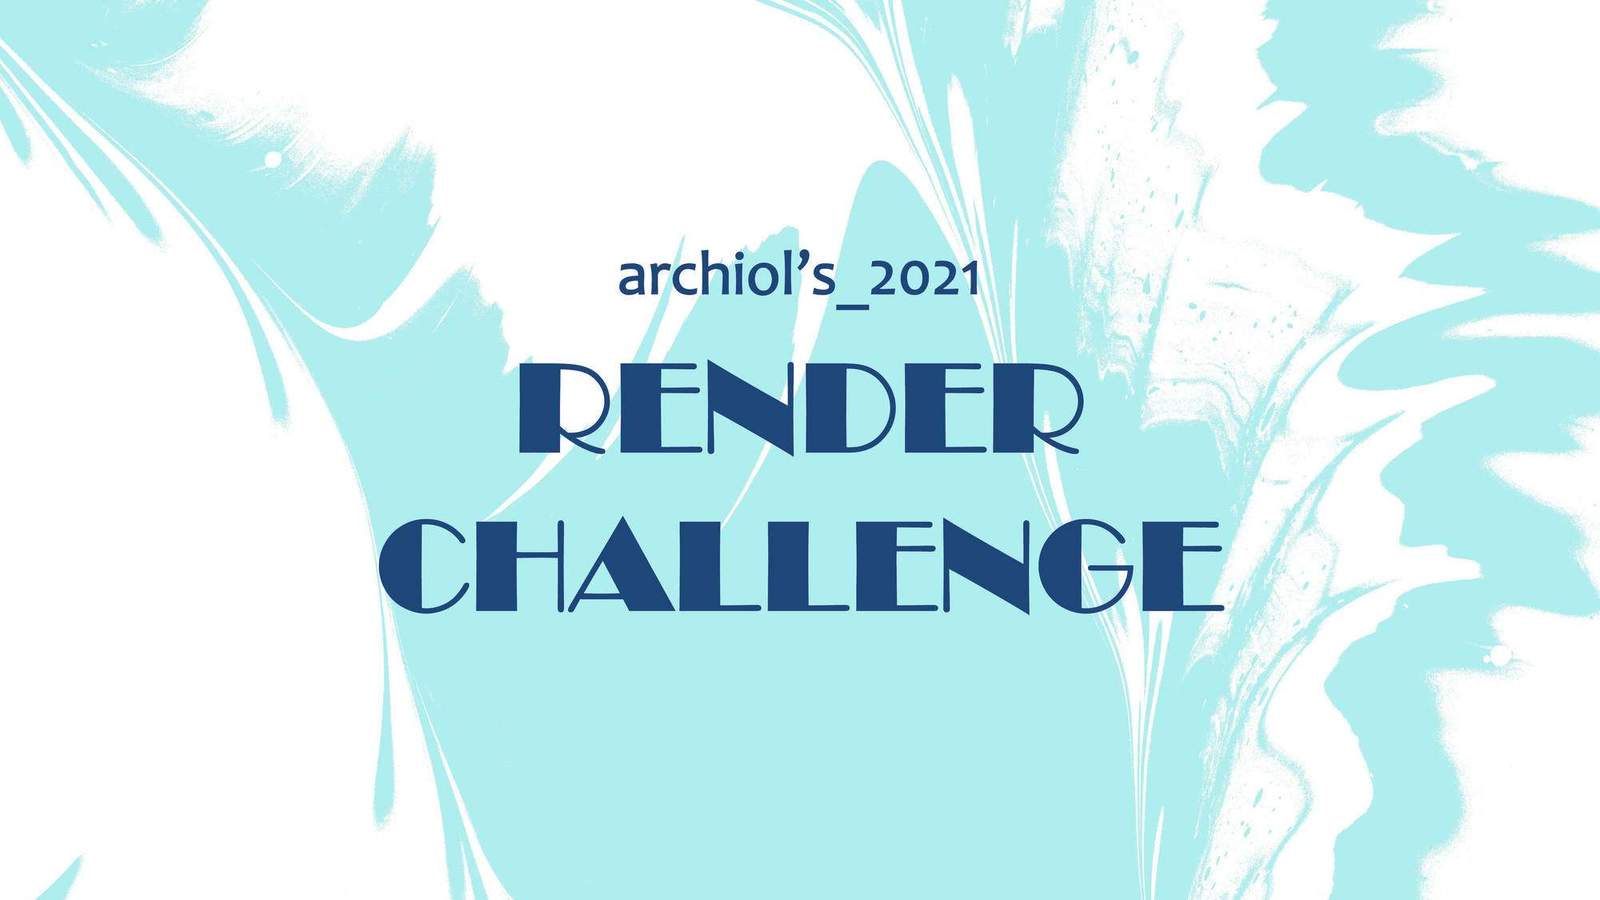 بطولة أرشيول 2021 – تحدي الأداء